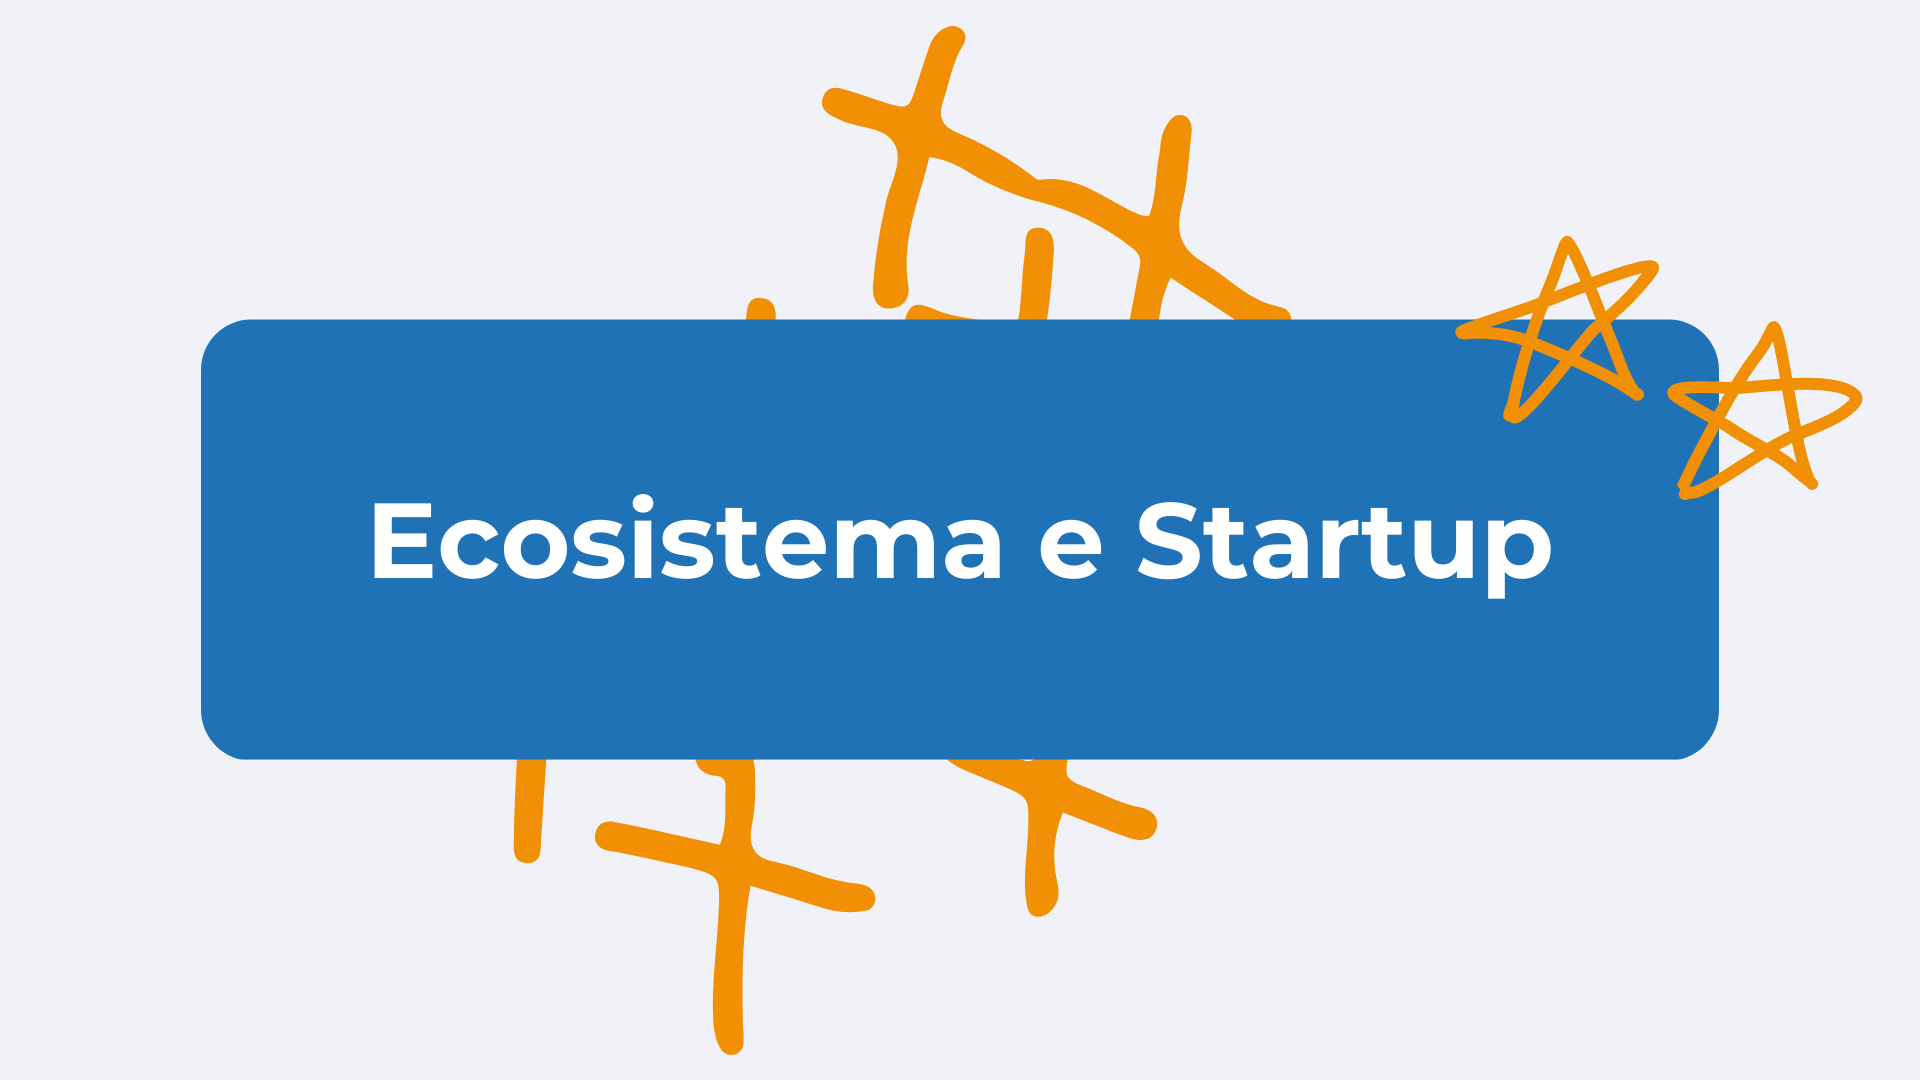 Ecosistema e startup